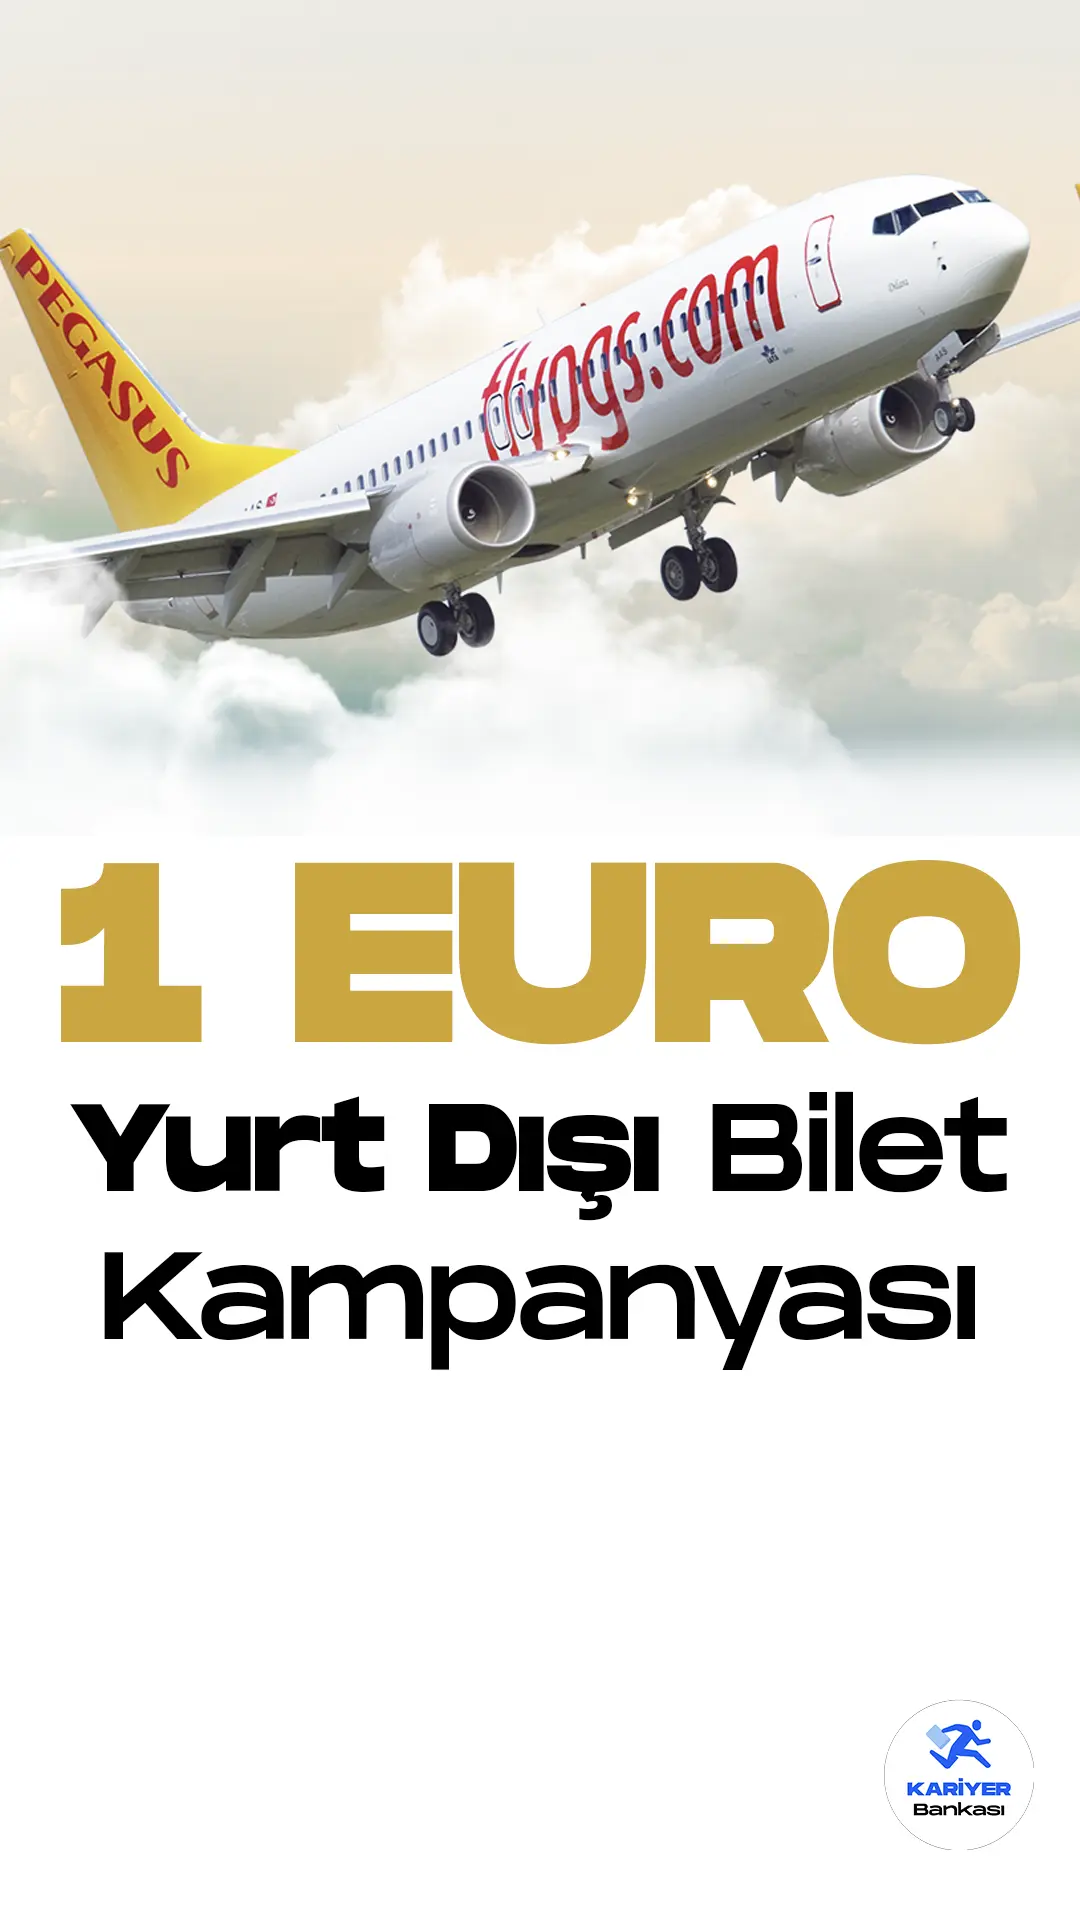 Pegasus , 1 EURO yurt dışı bilet kampanyasını duyurdu. Kampanyaya başvurular 13-16 Nisan tarihleri arasında gerçekleşecek.